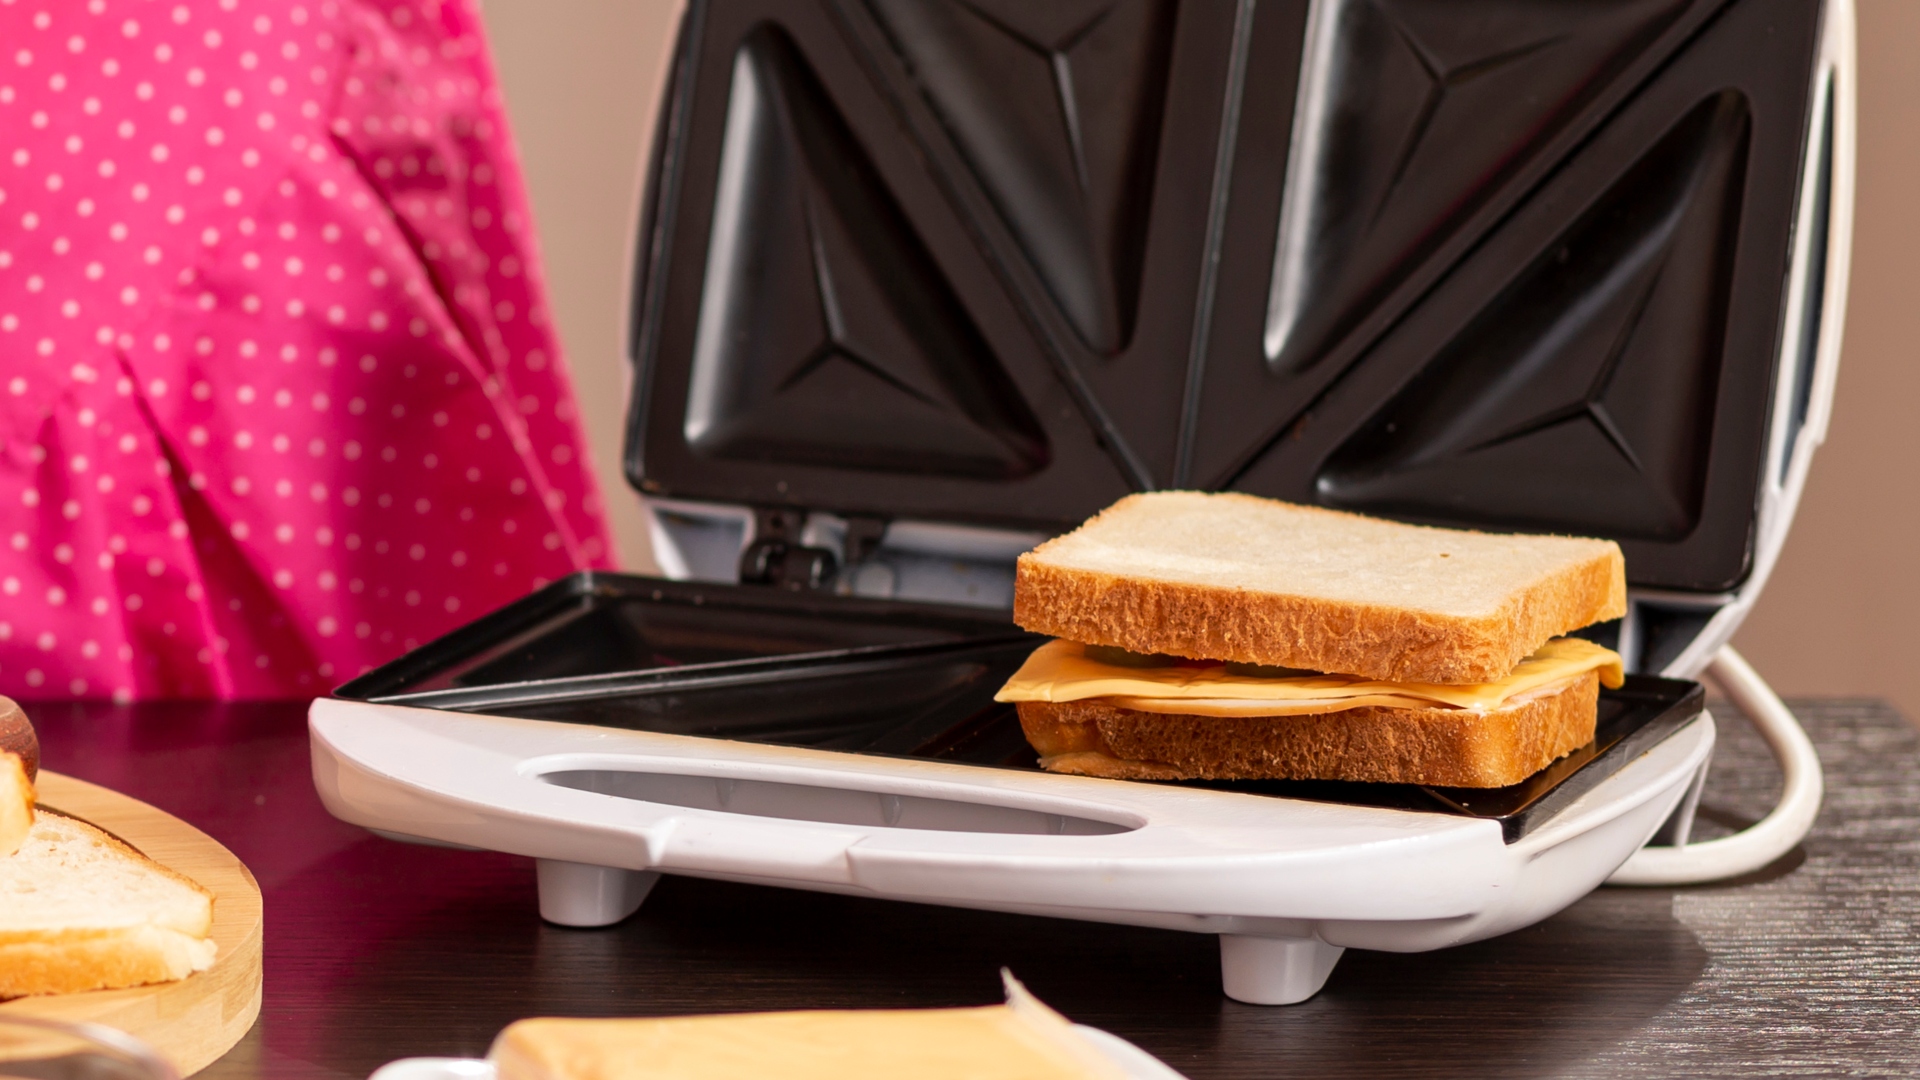 Plancha Sandwichera 3 en 1, ¡Cocina de todo! 🙌 Gracias a su versatilidad  podrás preparar waffles, sándwiches o cocinar alimentos como carnes y  vegetales. 🧇🥪🍆🥩 ¡Imperdible!, By Oster